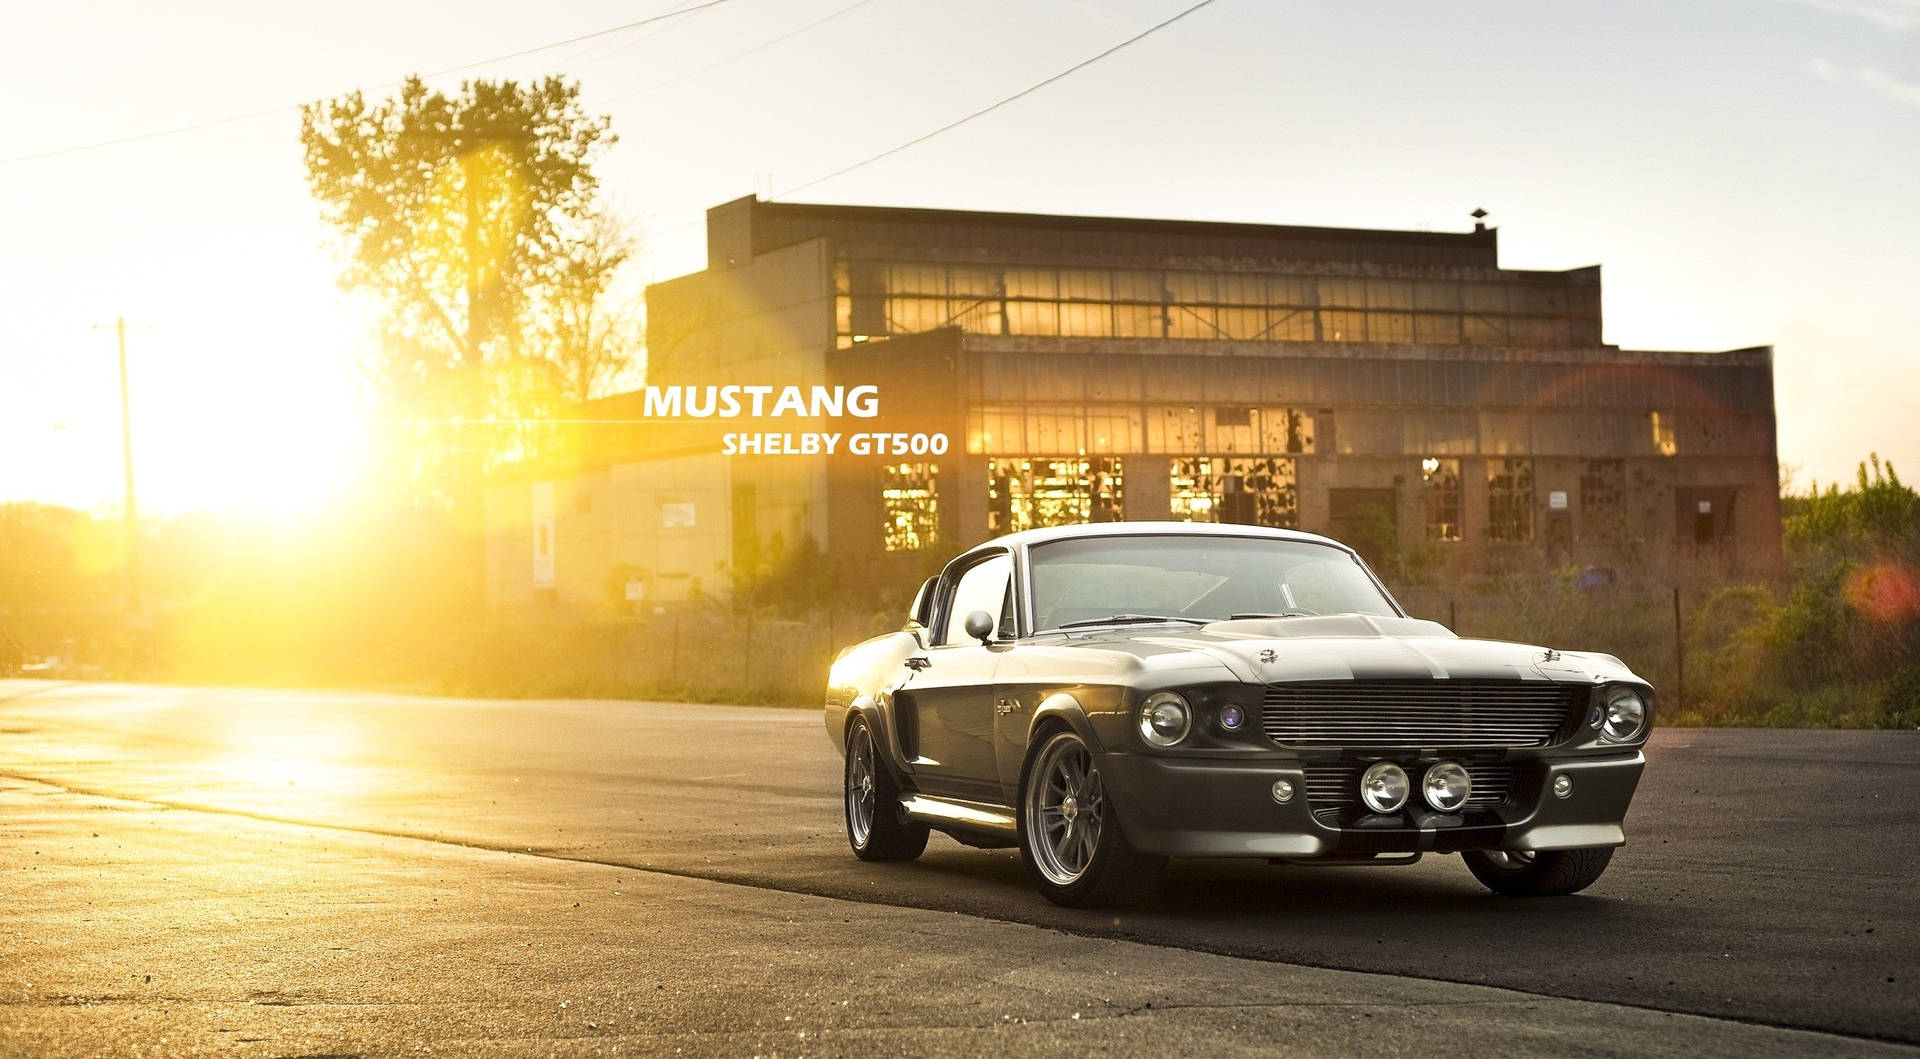 Unaclassica Mustang È Parcheggiata Di Fronte A Un Edificio. Sfondo